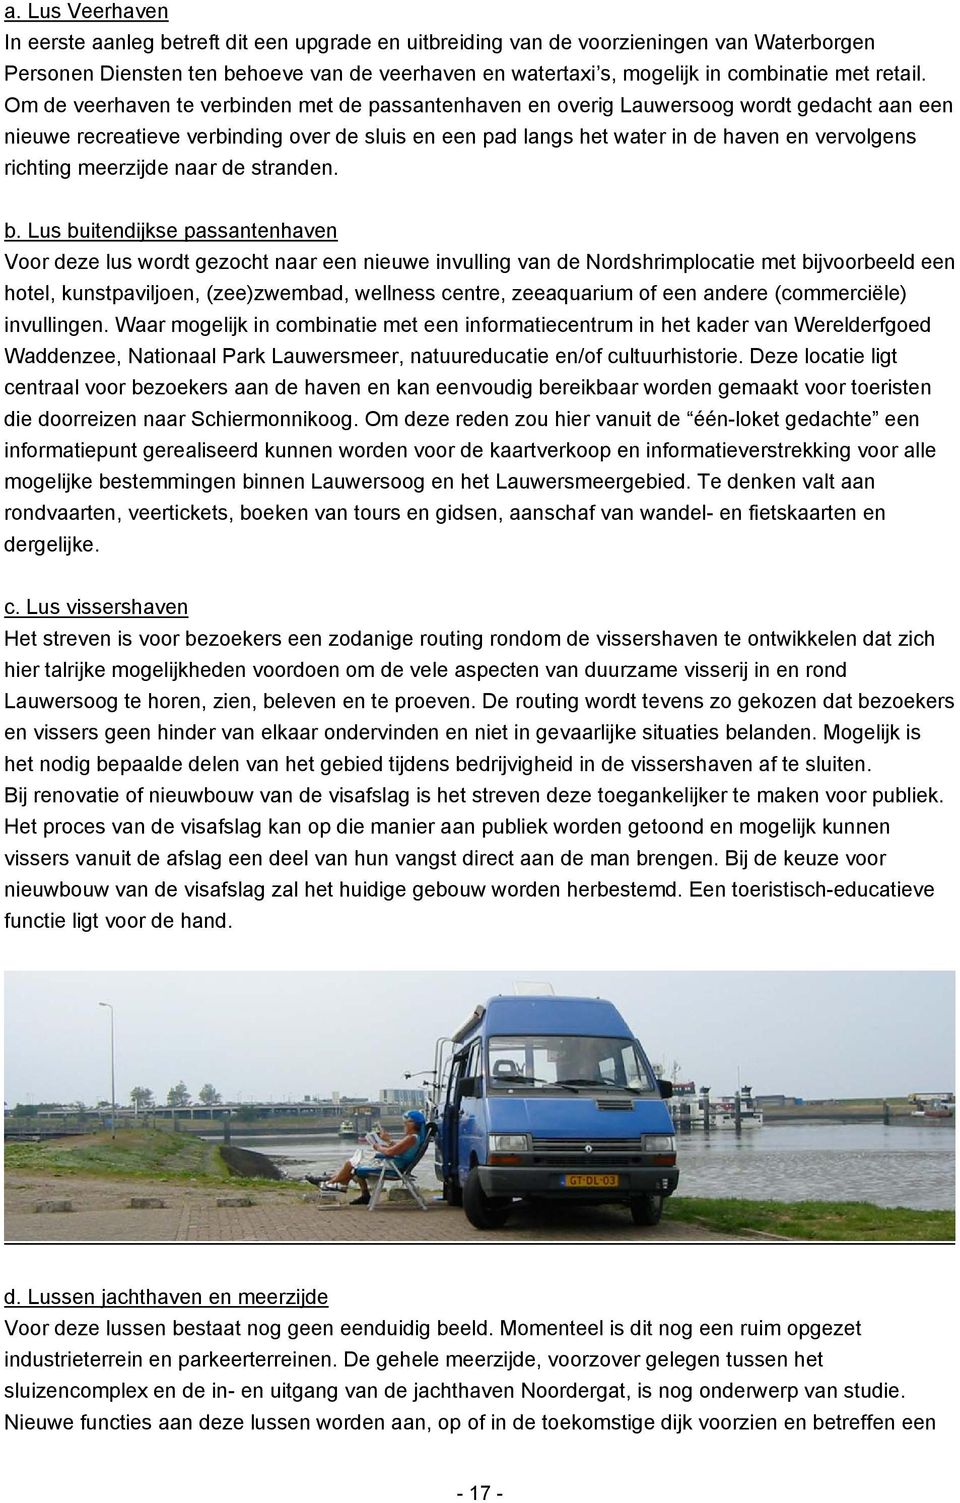 Om de veerhaven te verbinden met de passantenhaven en overig Lauwersoog wordt gedacht aan een nieuwe recreatieve verbinding over de sluis en een pad langs het water in de haven en vervolgens richting